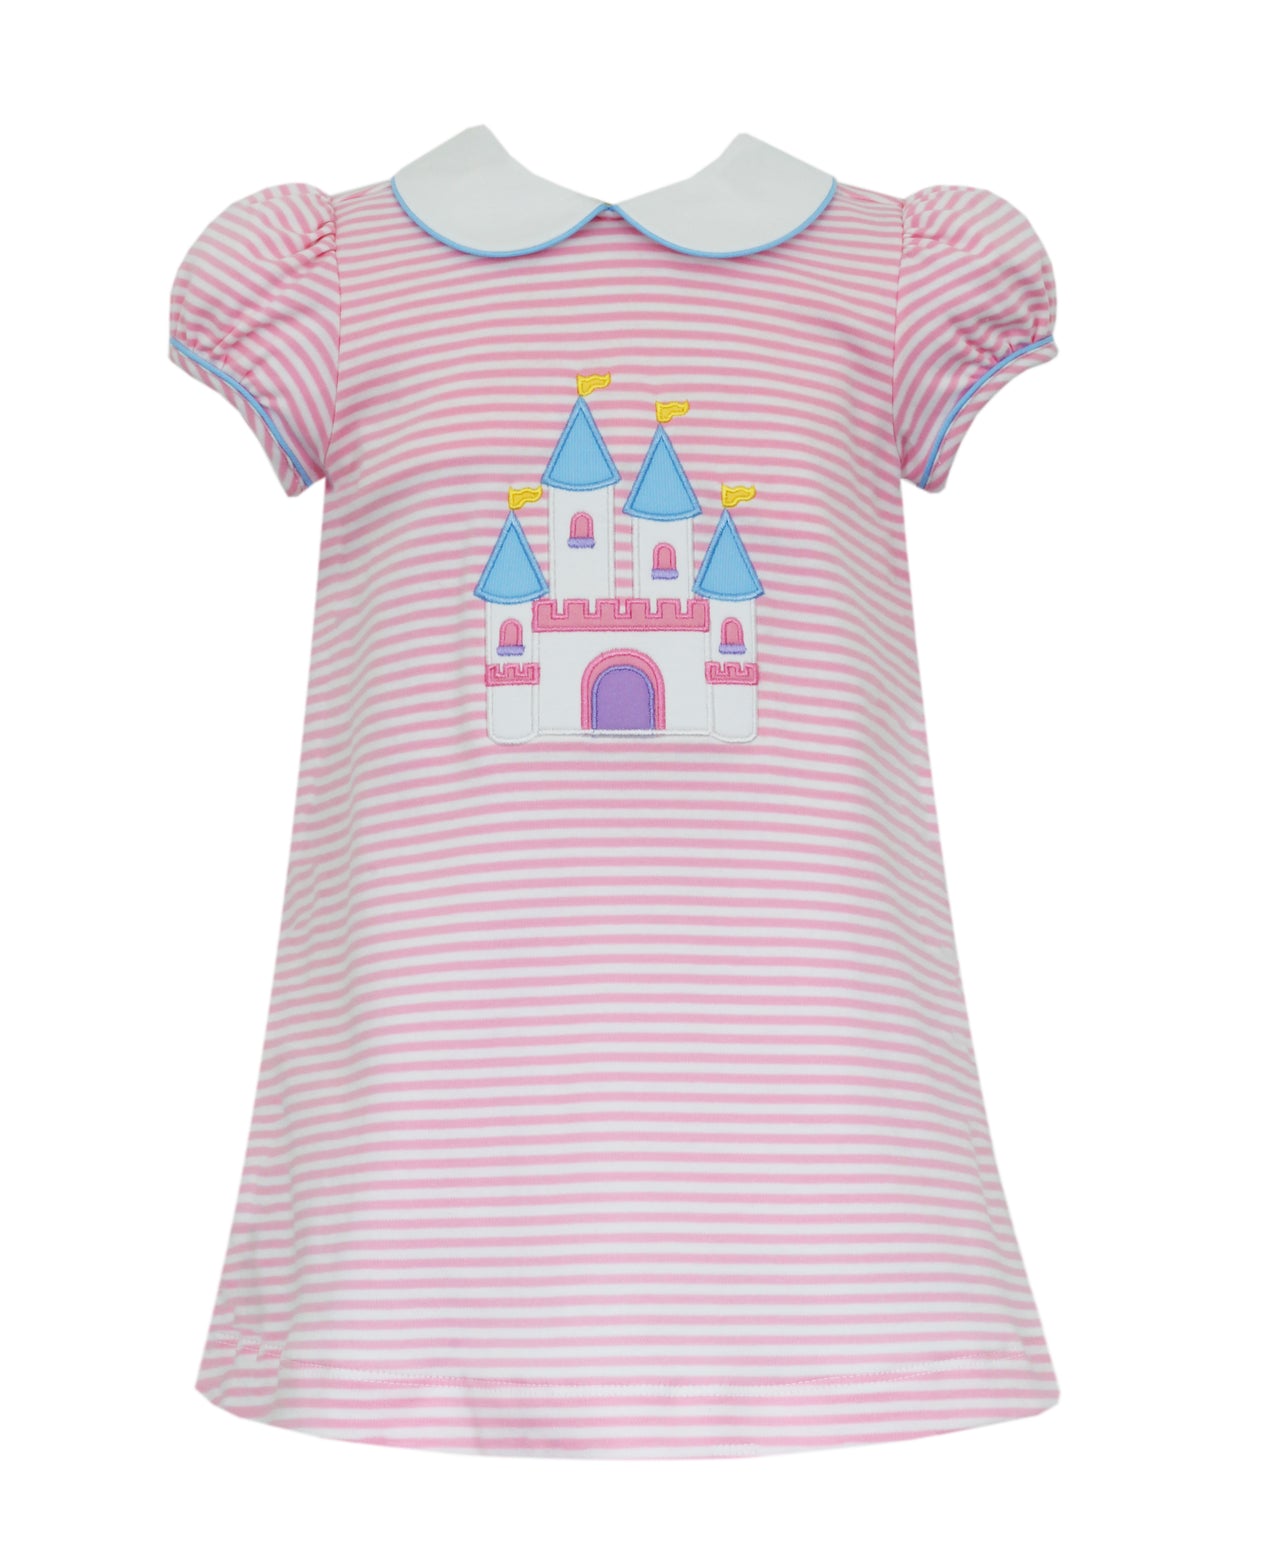 Claire & Charlie Castle Pink Knit Stripe Girl's Dress 5006D-CS24 5103